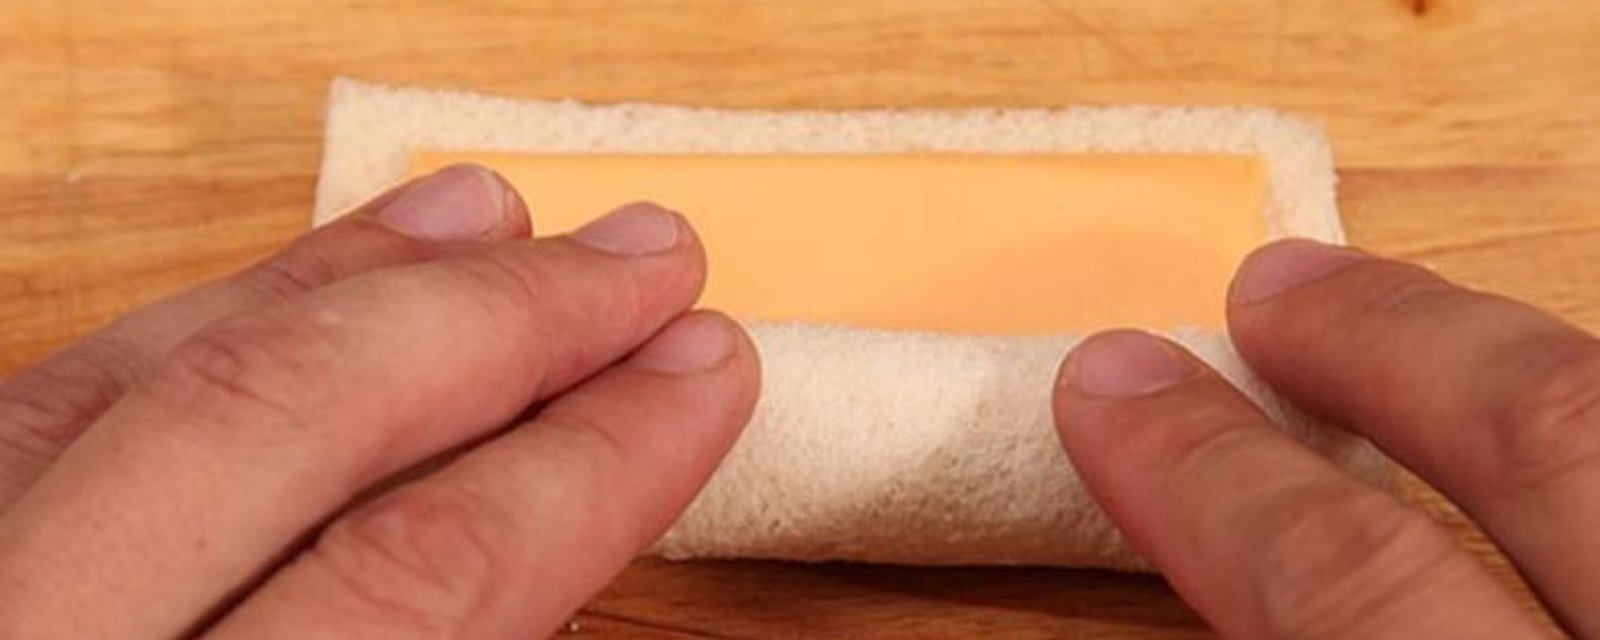 C'est pour obtenir le meilleur sandwich au fromage qu'il le prépare de cette façon!